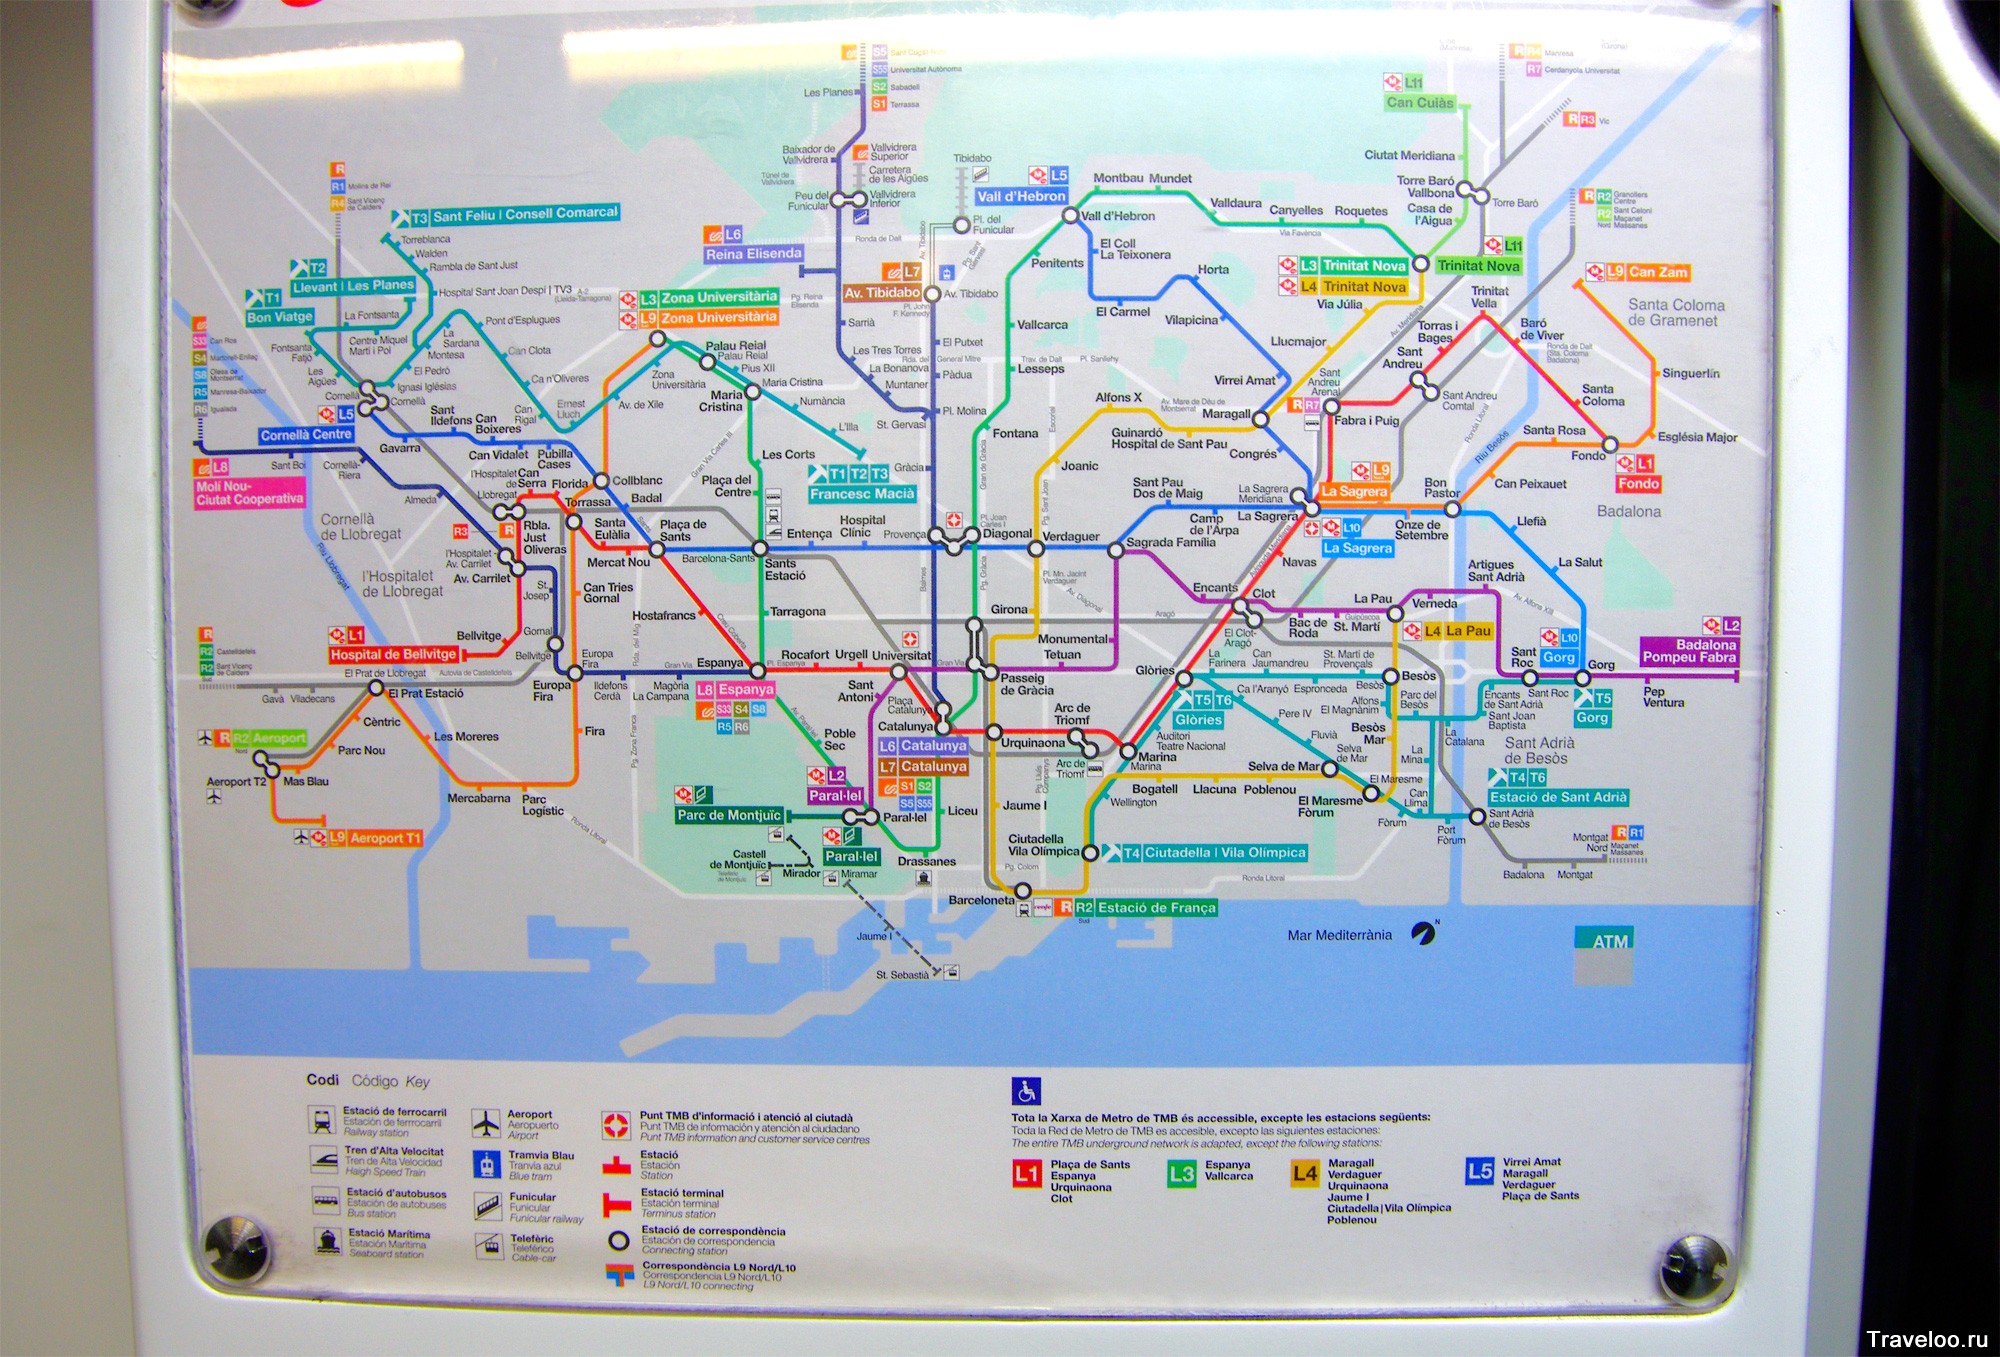 Карта барселоны на русском языке, карта метро барселоны и другие полезные карты и схемы барселоны на туристер.ру